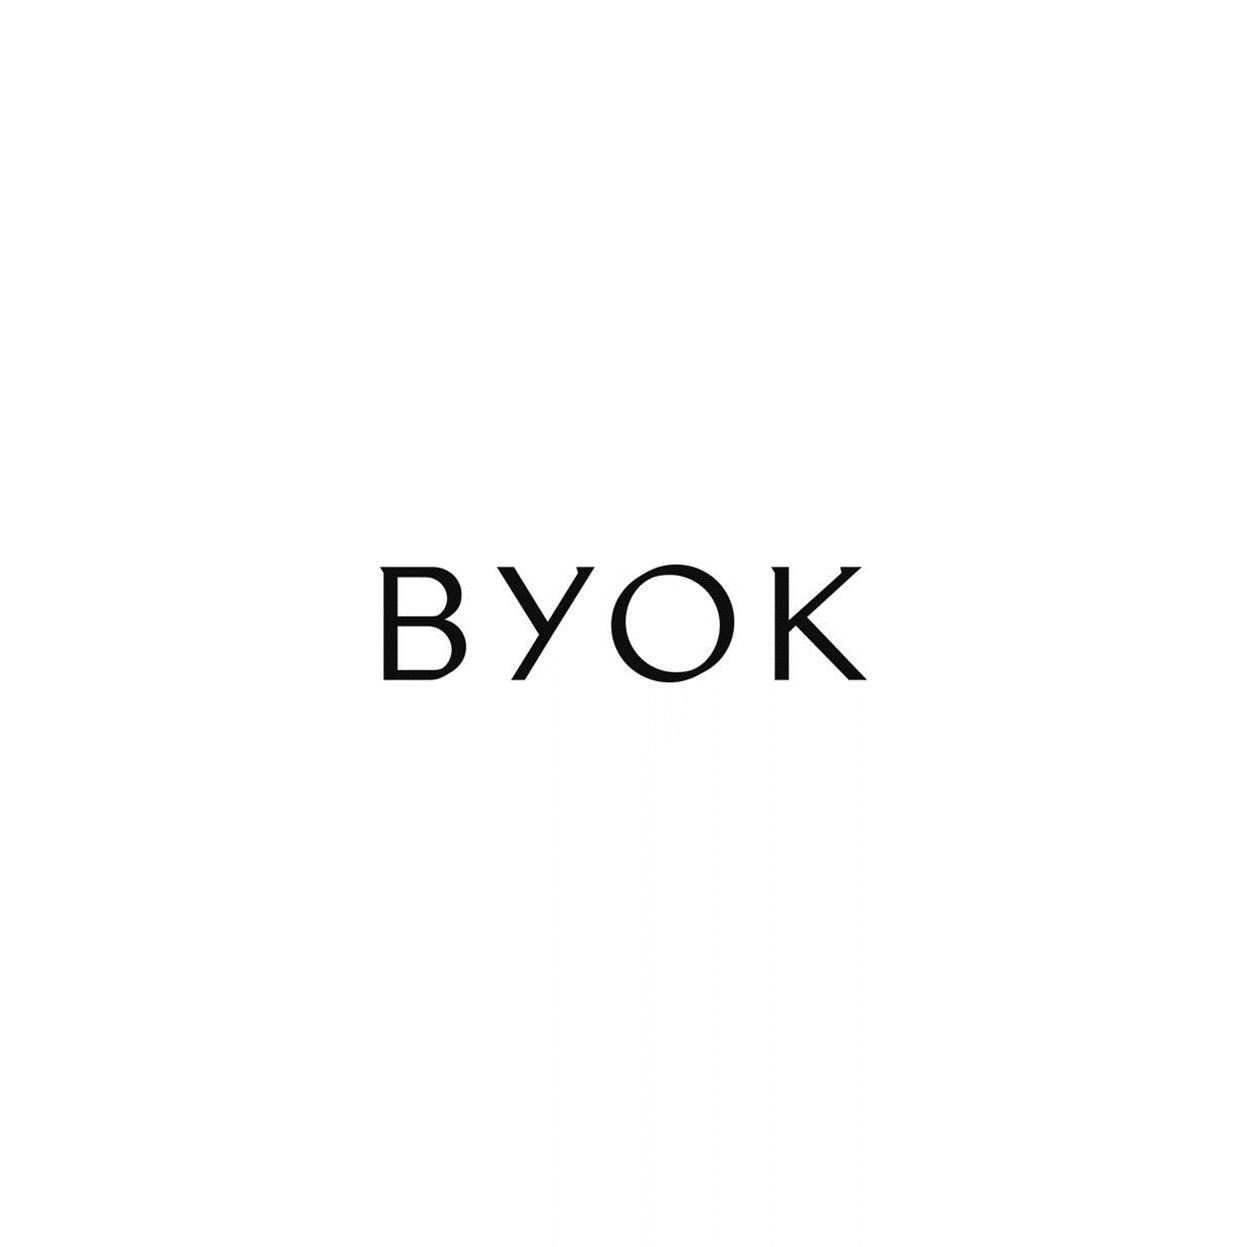 Byok - Objekte Licht & Raum GmbH in Hamburg